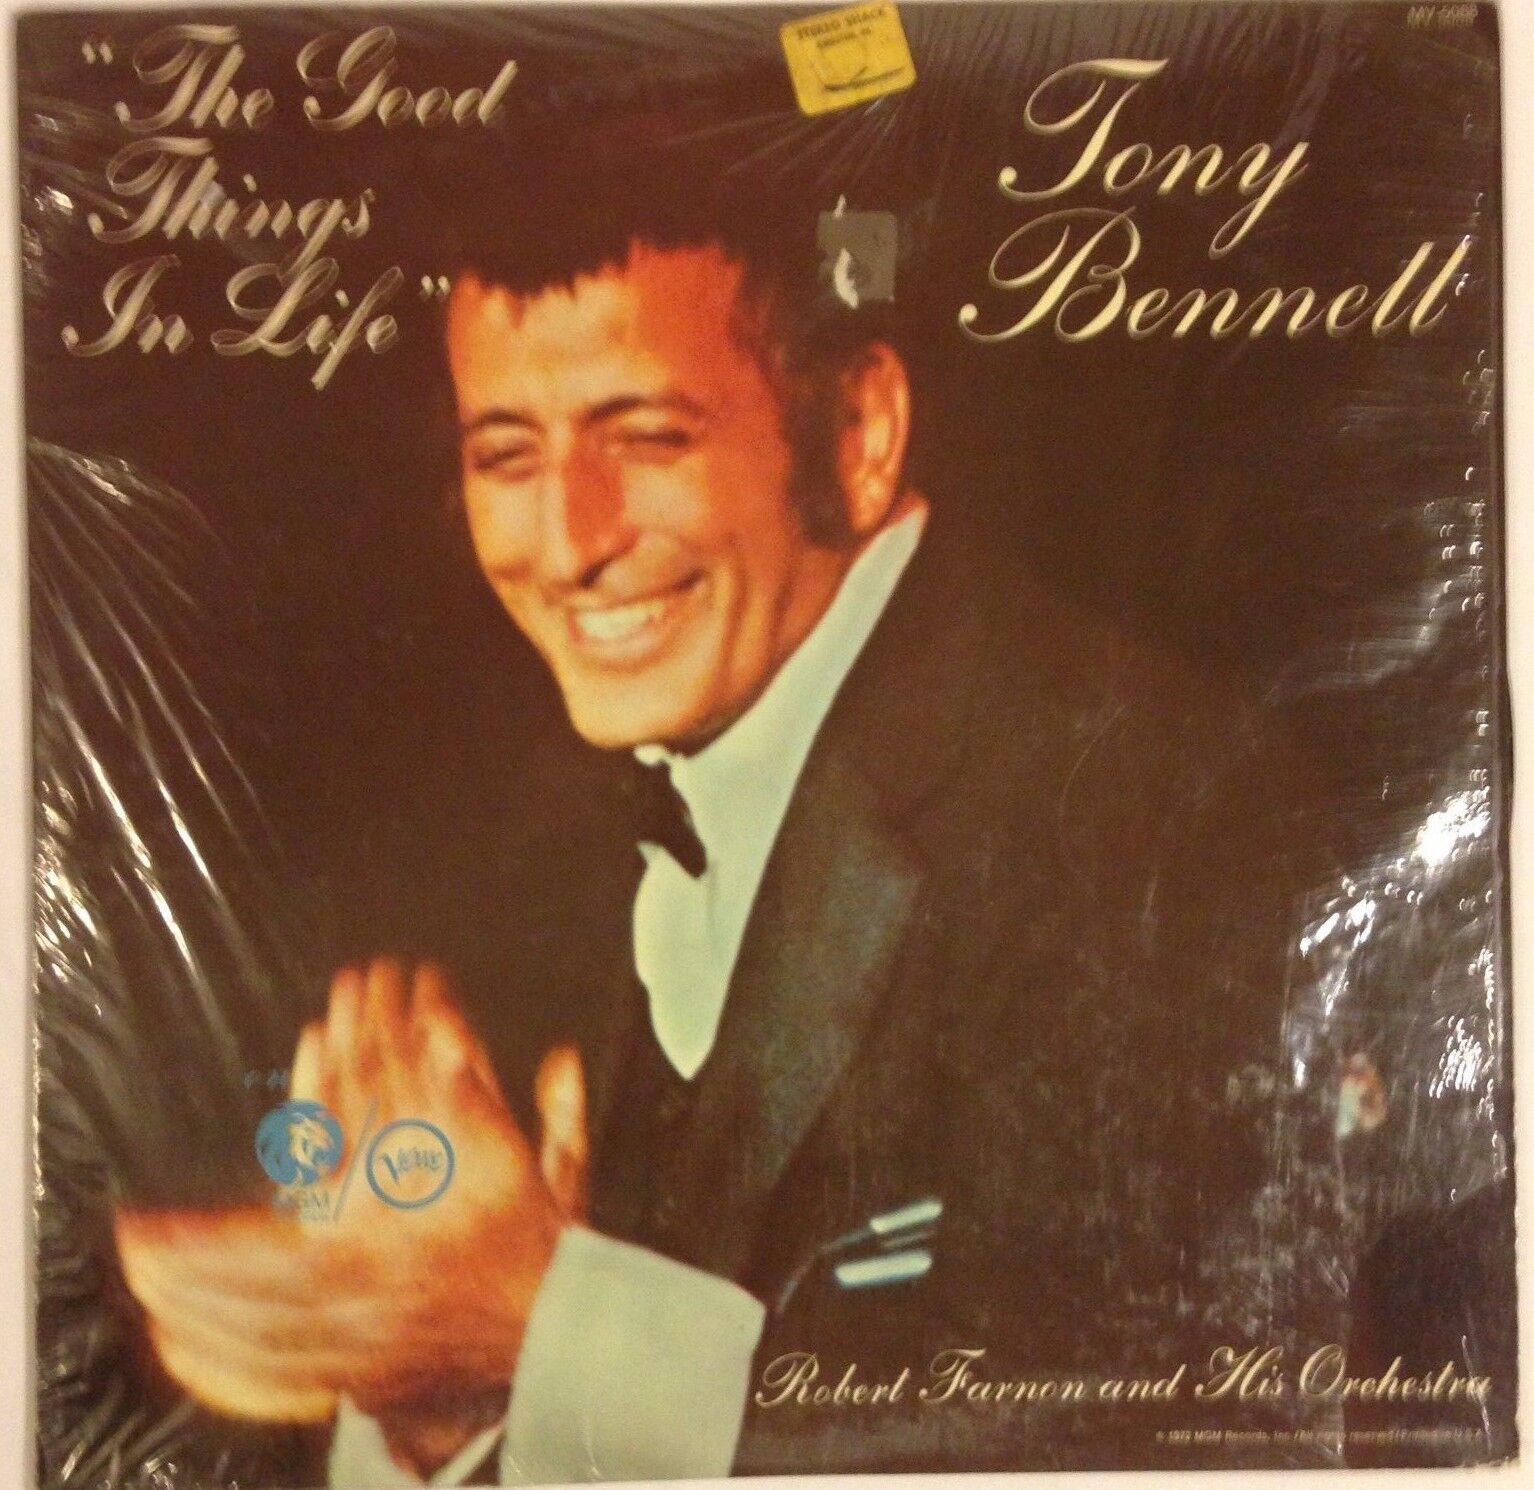 Tony Bennett The Good Things In Life vinyl LP 1972 Ex+ open shrink Jazz Pop